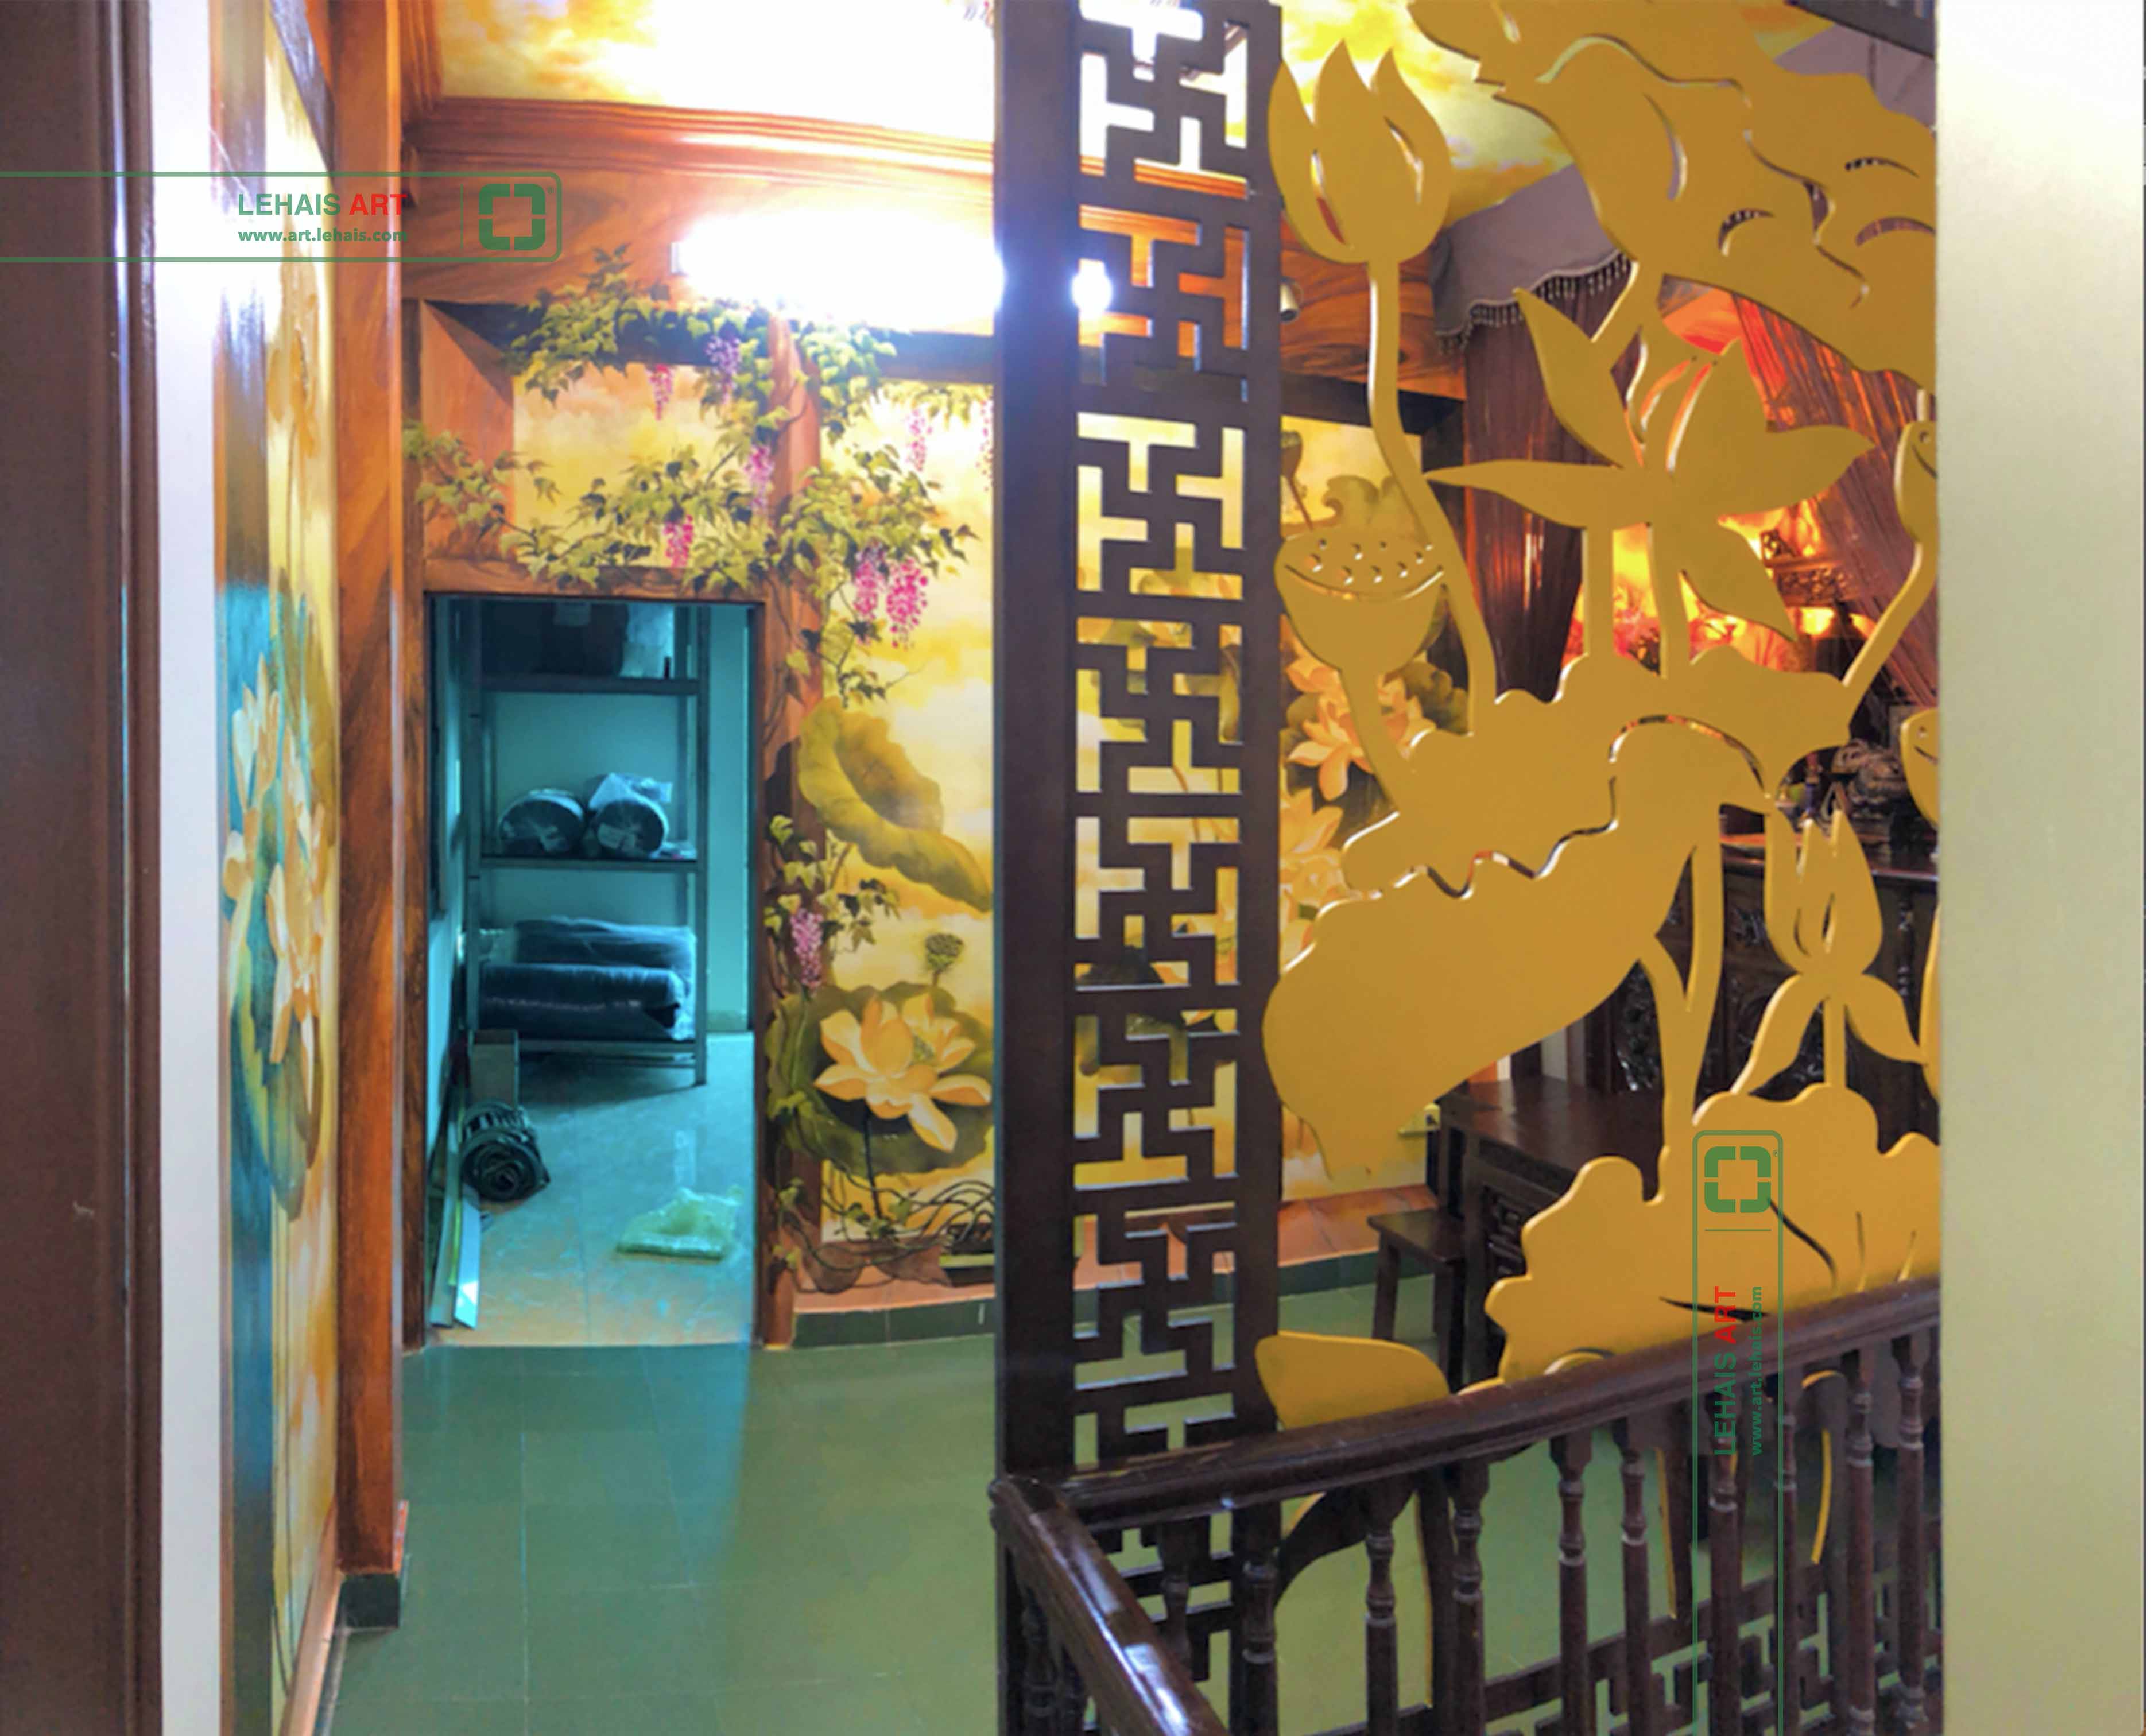 Vẽ tranh hoa sen 3D tại phòng thờ gia đình ở phố Đường Thành, quận Hoàn Kiếm, Hà Nội - TT194LHAR 6